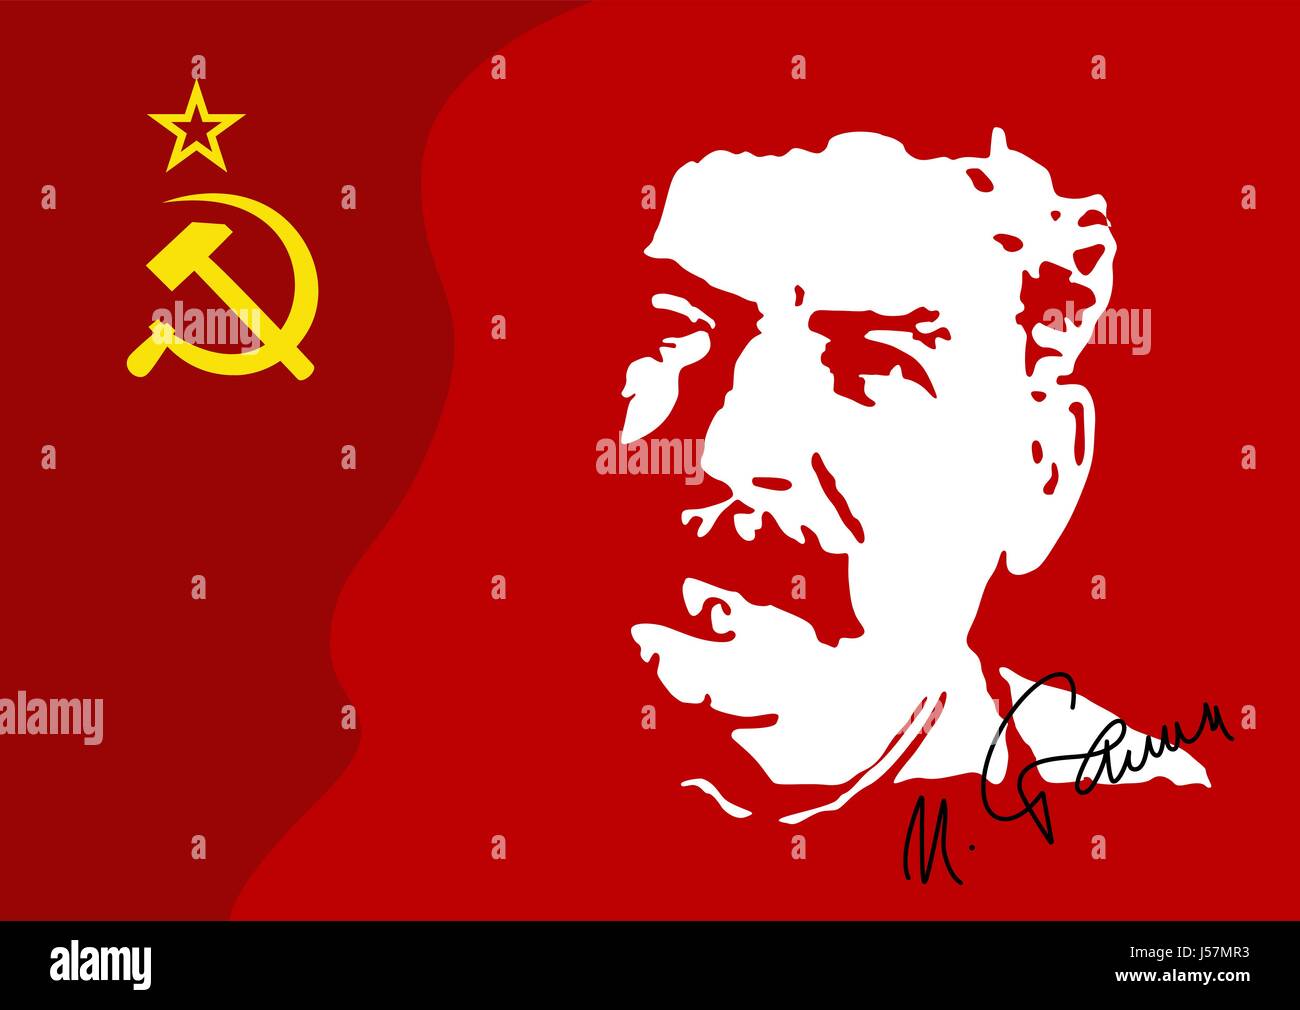 Vektor-Illustration eines I.V. Stalin-Porträt auf sowjetische Rote Fahne. Stalin ist ein militärischer Führer der kommunistischen Regierung der UdSSR bis 1953. Stock Vektor